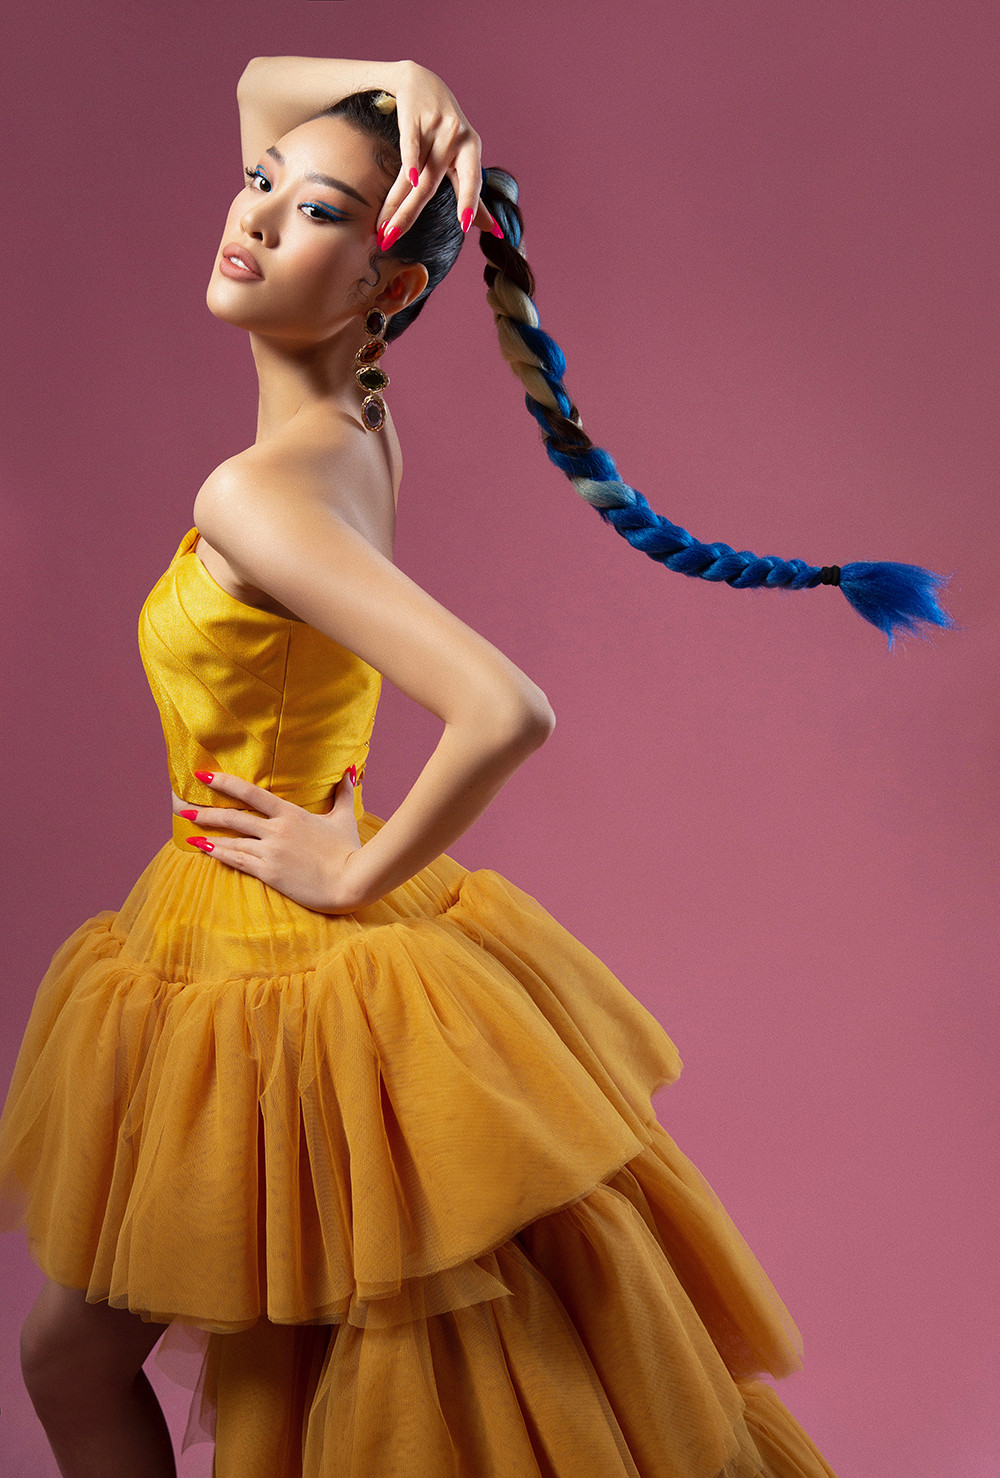 Hoa hậu Khánh Vân gợi cảm khi biến hoá với sắc màu  - 6